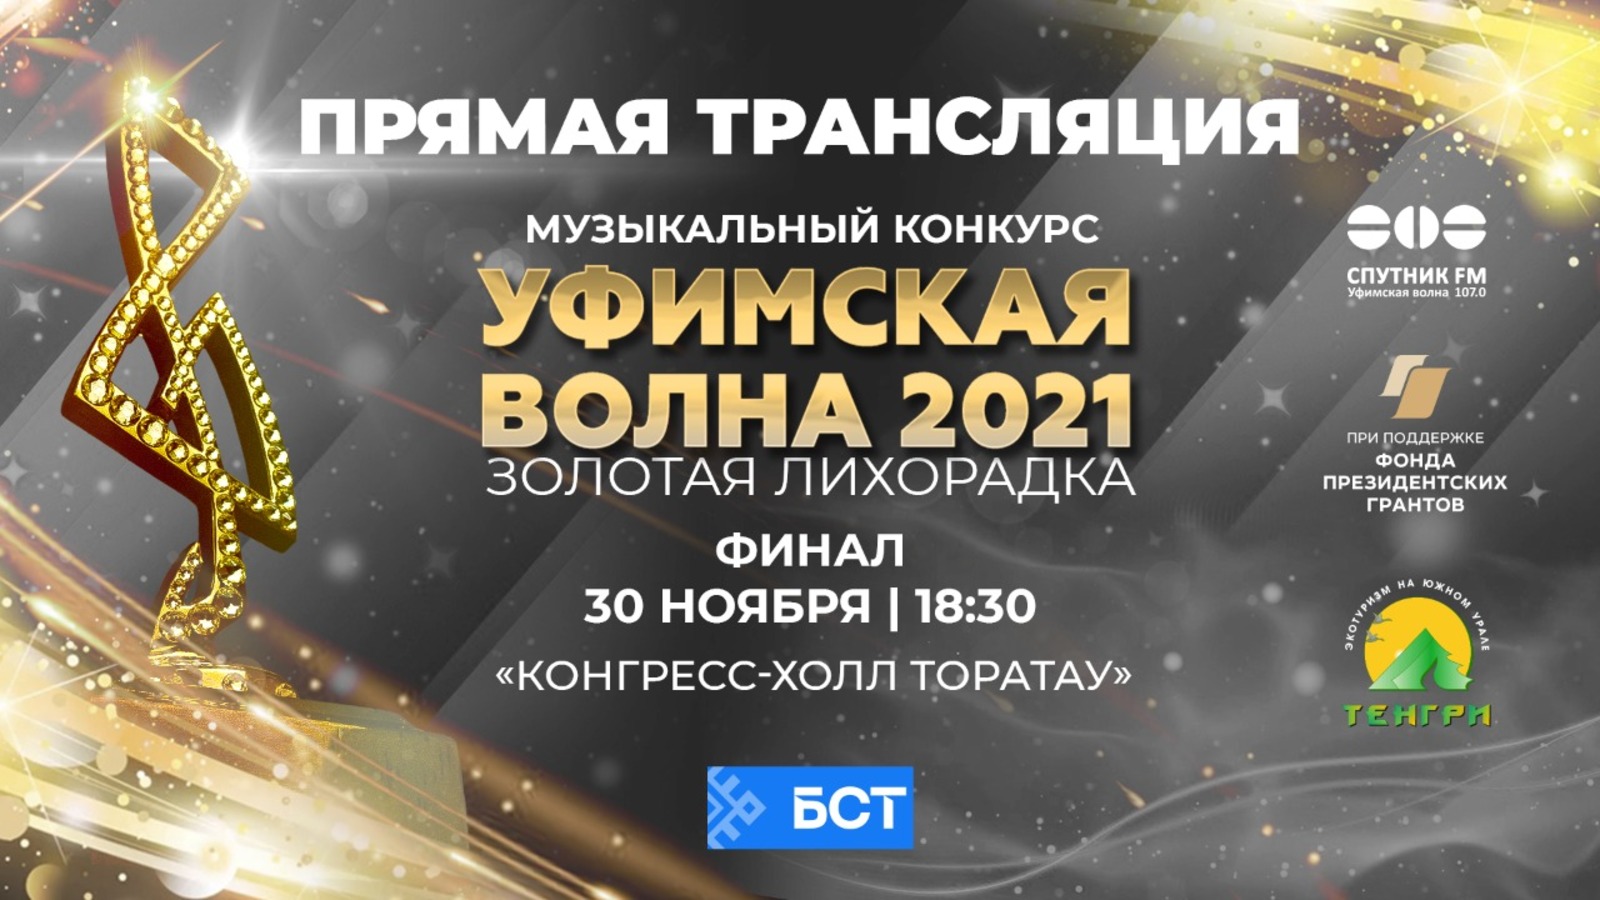 Финал конкурса «Уфимская волна-2021» пройдёт 30 ноября в прямом эфире